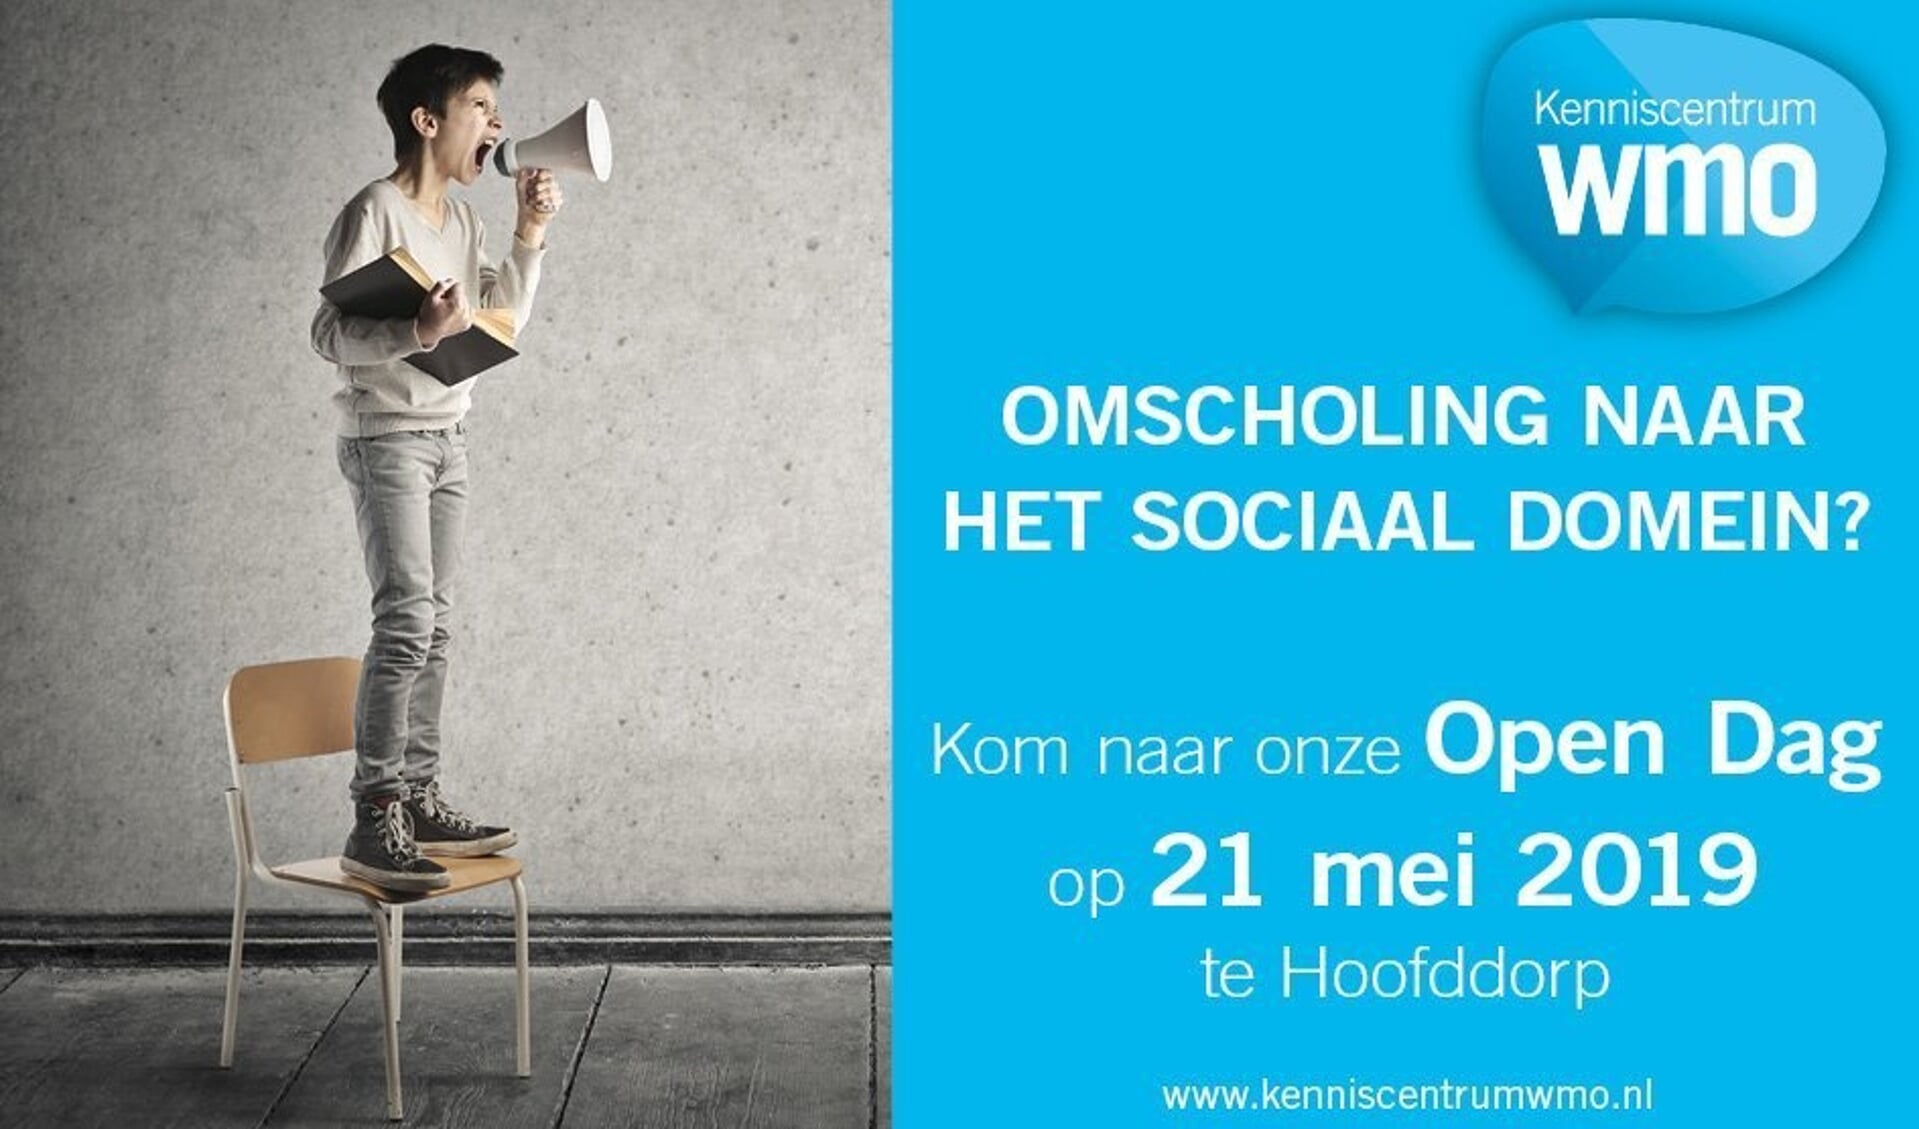 In Hoofddorp is de eerste open dag van Kenniscentrum WMO. 